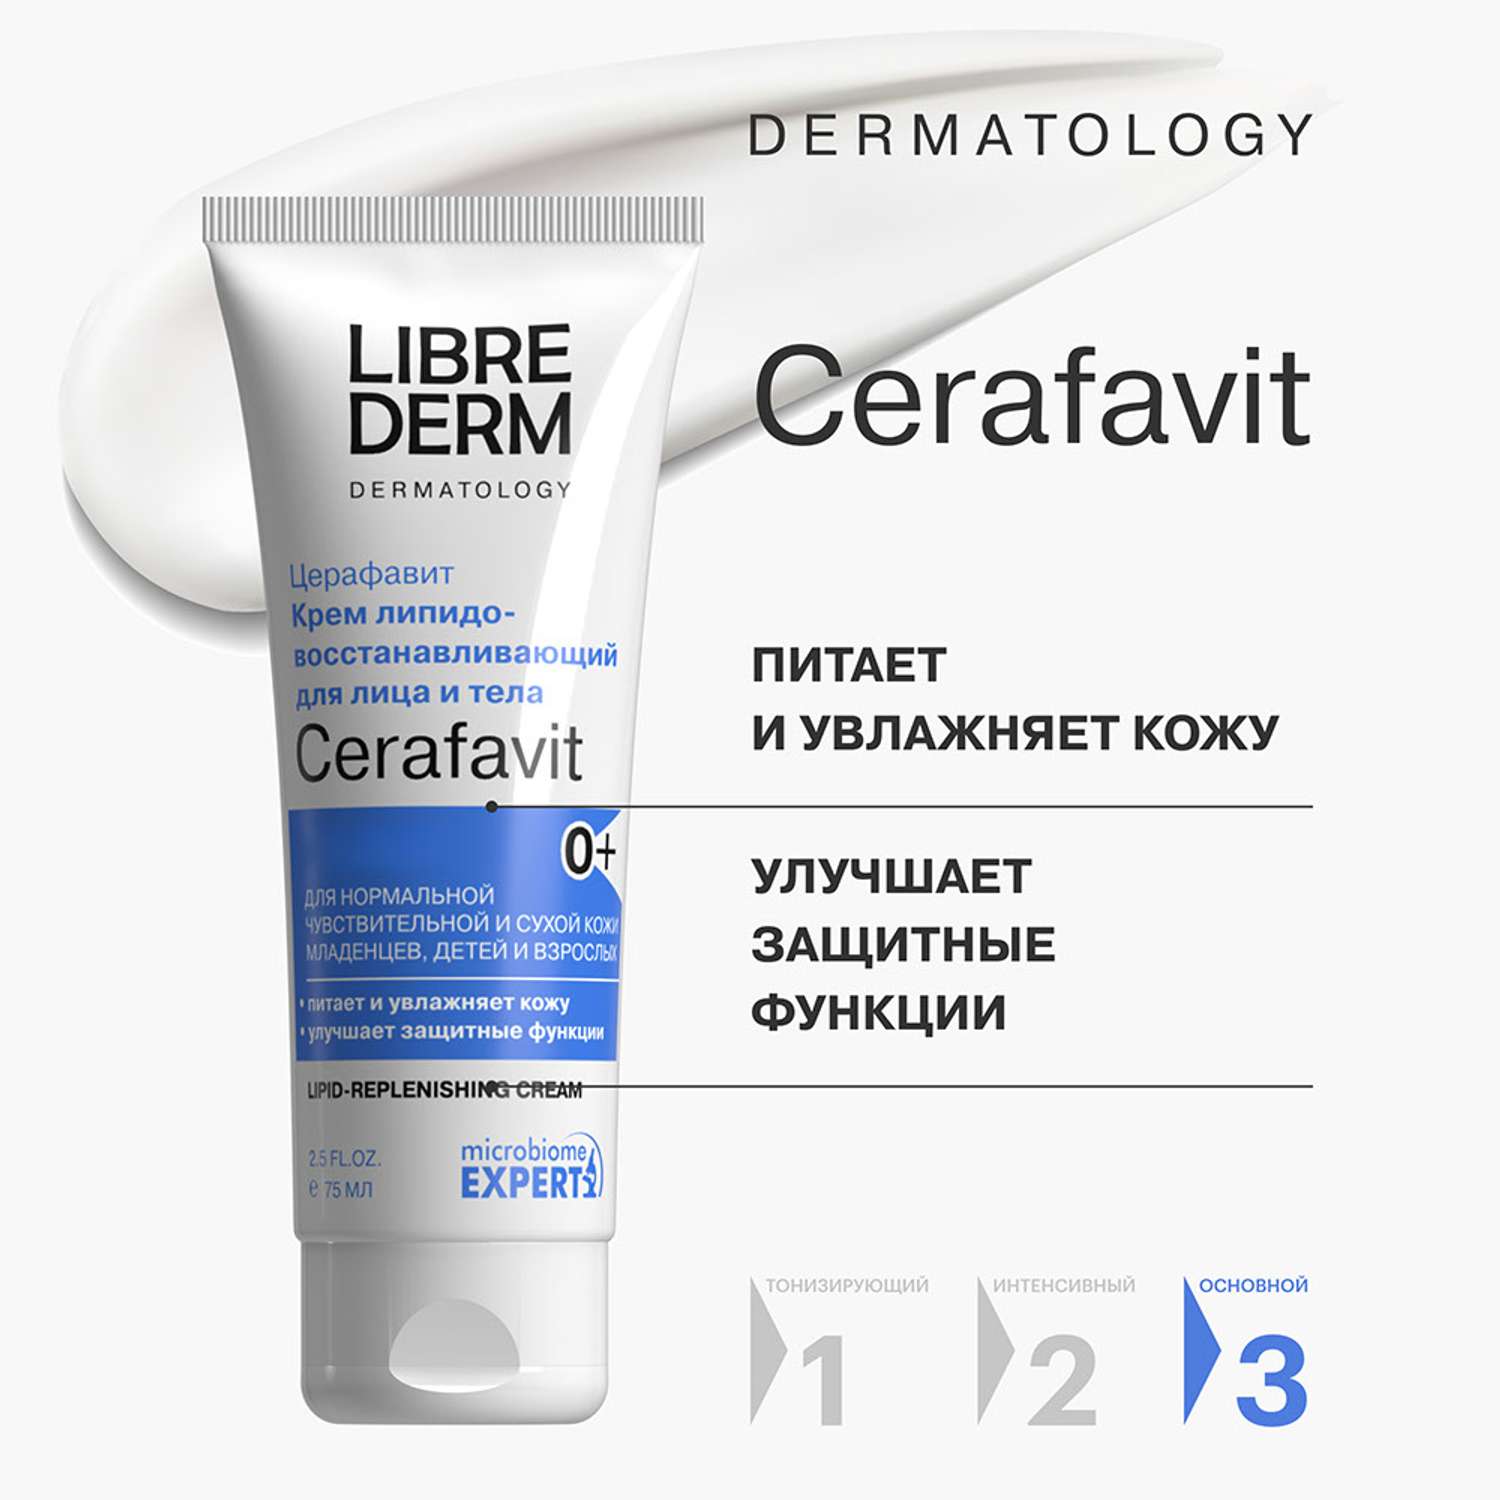 Крем 75 мл Librederm CERAFAVIT крем липидовосстанавливающий с церамидами и пребиотиком для лица и тела 0+ - фото 3